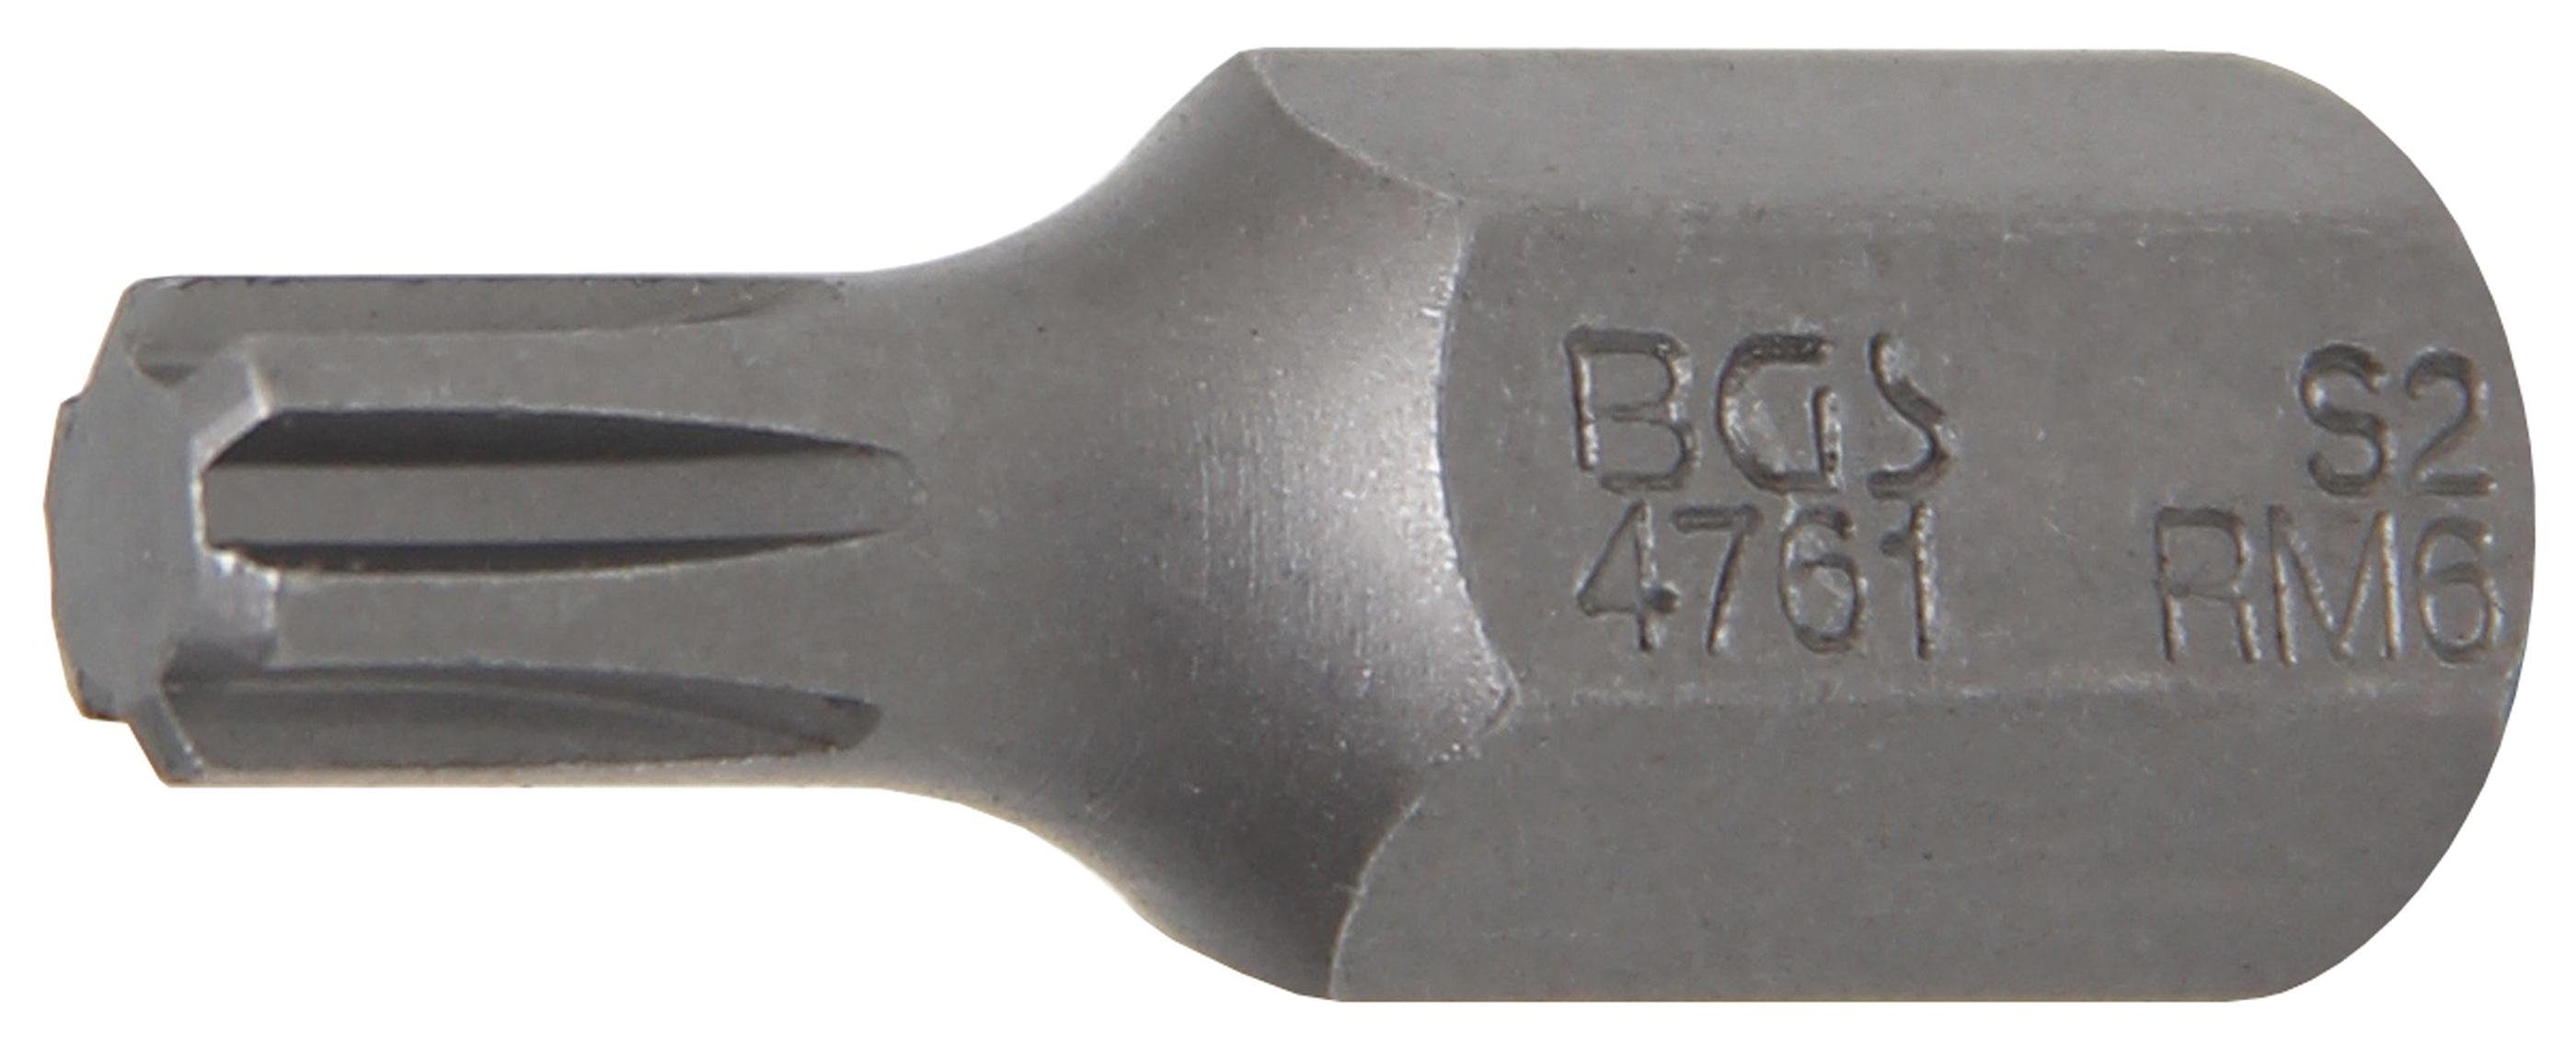 BGS technic Bit-Schraubendreher Bit, Antrieb Außensechskant 10 mm (3/8), Keil-Profil (für RIBE) M6 | Schraubendreher